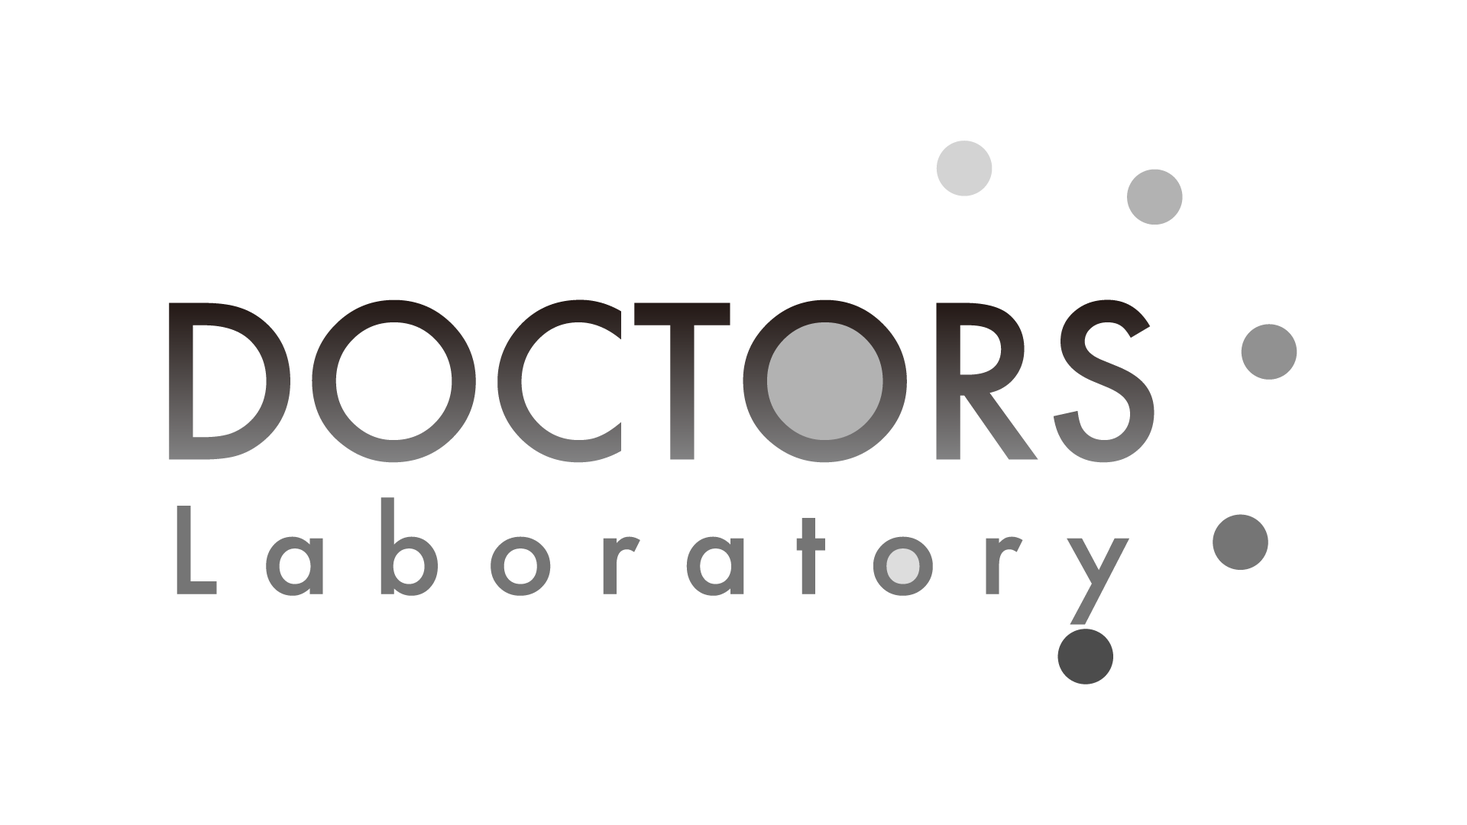 デジタルヘルスプラットフォーム事業を展開するドクターズ　医療機関品質のPCR検査センター「ドクターズ・ラボラトリー」を始動